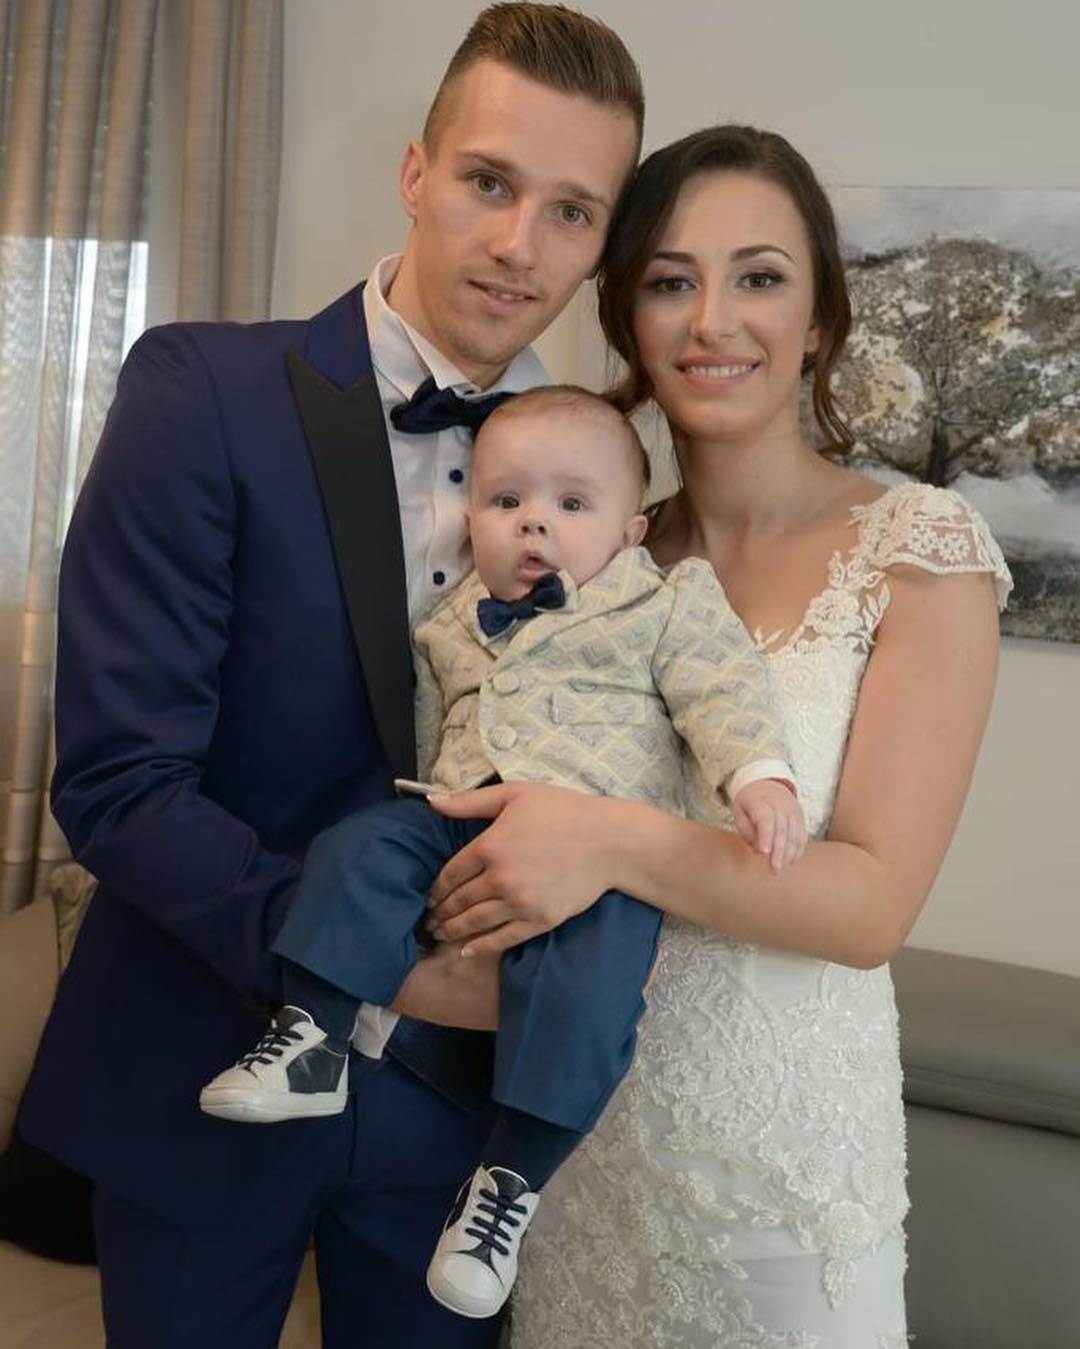 U OBITELJ DINAMOVCA STIGLA PRINOVA Nogometaš i supruga dobili drugog sina